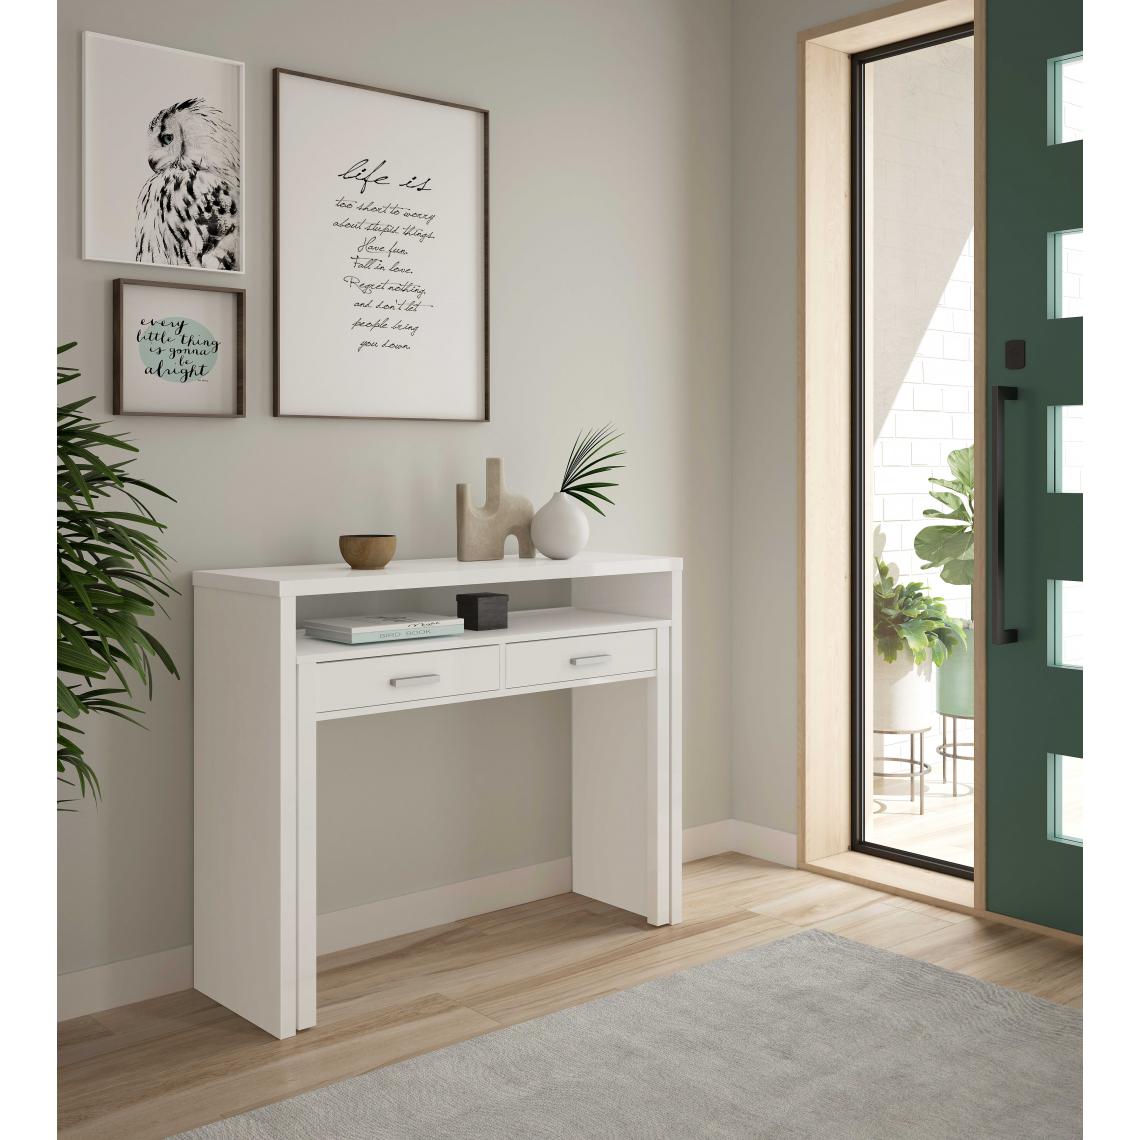 Alter - Bureau console extensible avec deux tiroirs, couleur blanc mat, Mesures 98 x 87 x 36 cm (extensible jusqu'à 66 cm) - Tables à manger